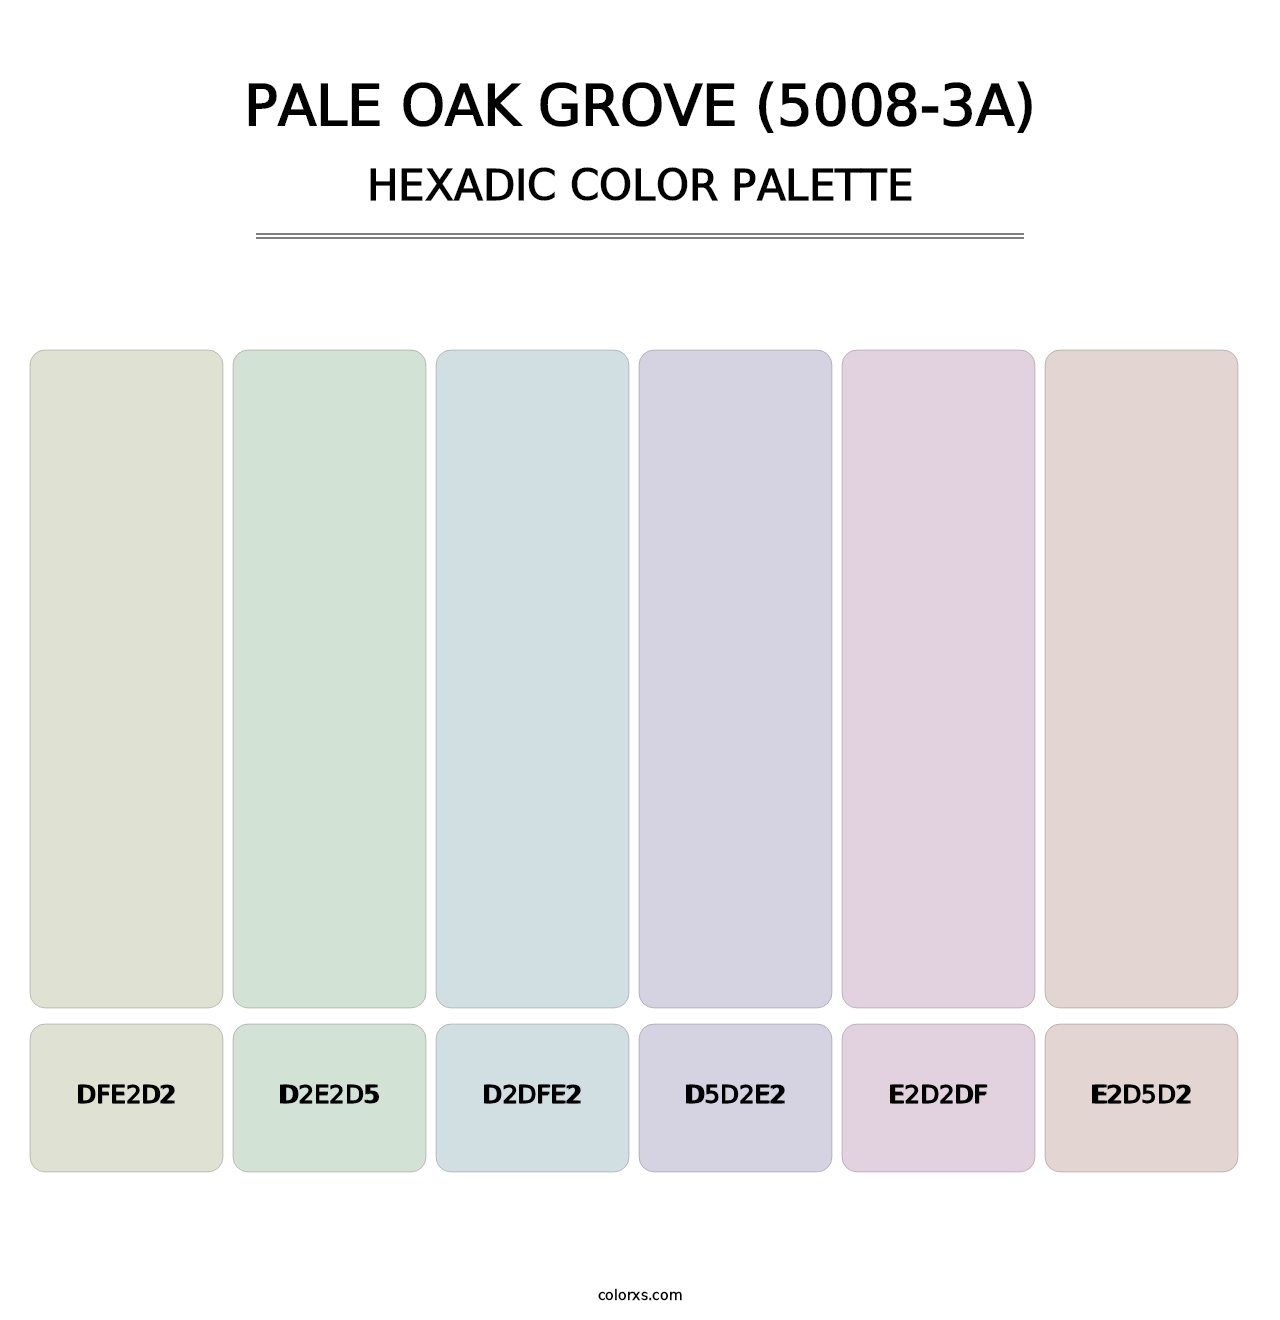 Pale Oak Grove (5008-3A) - Hexadic Color Palette